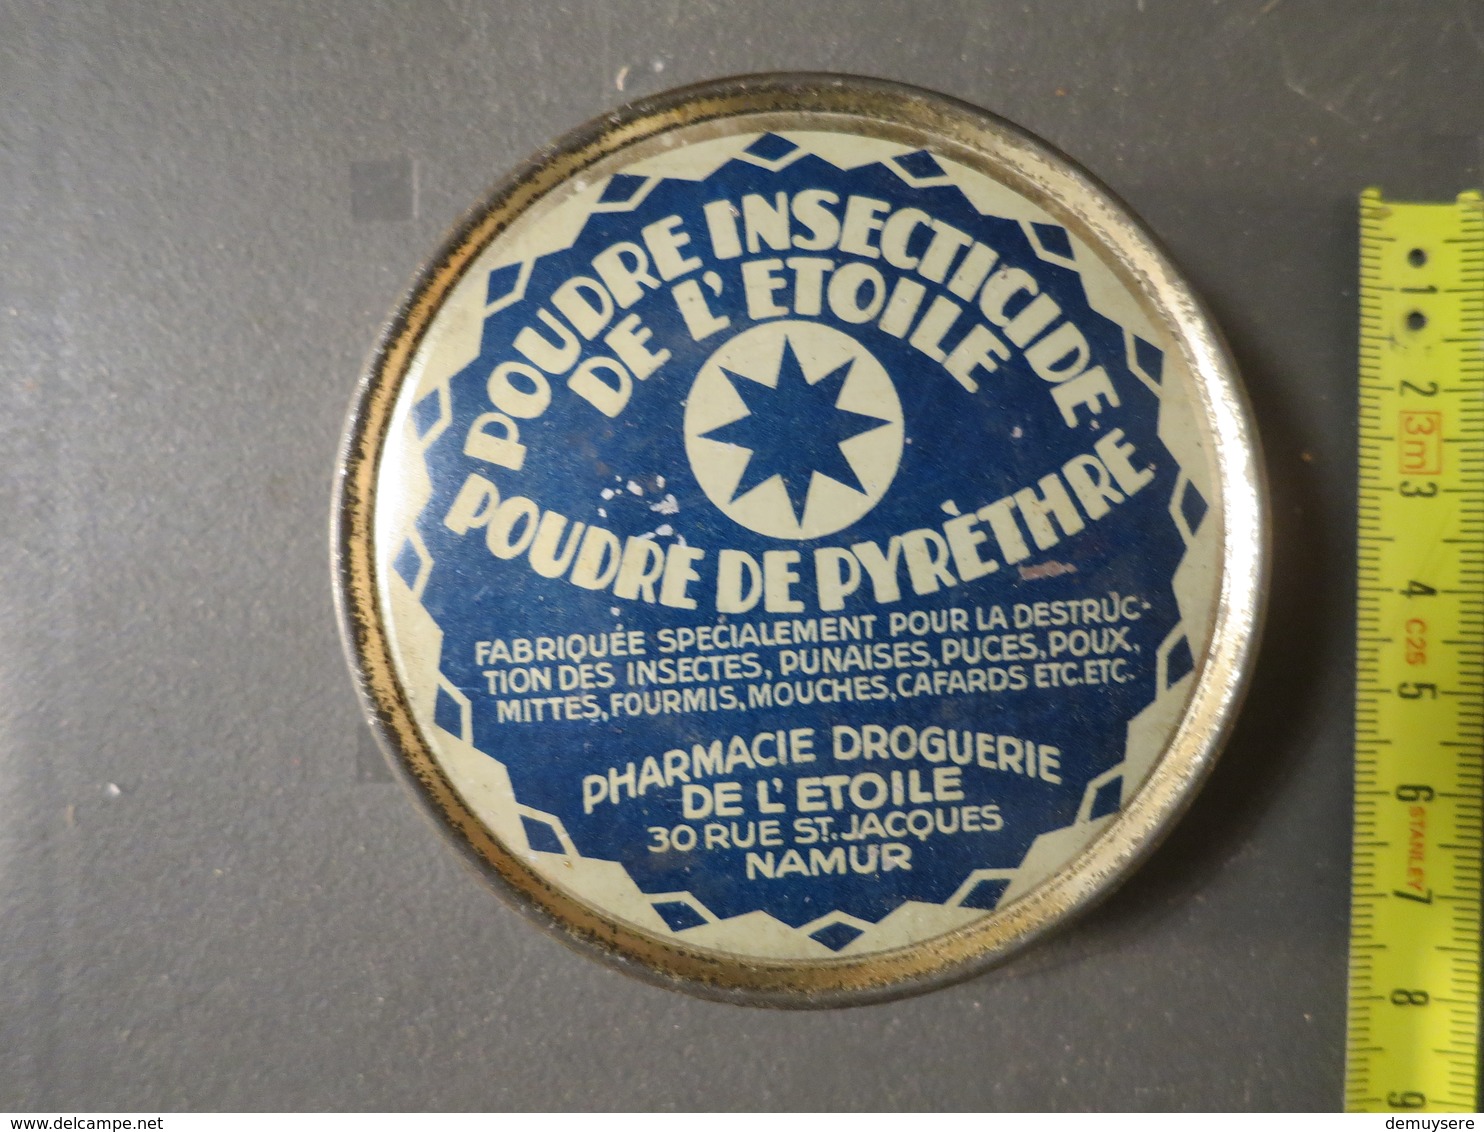 M H - Poudre Insecticide De L'etoile - Pharmacie Droguerie De L'etoile Namur - Boîtes